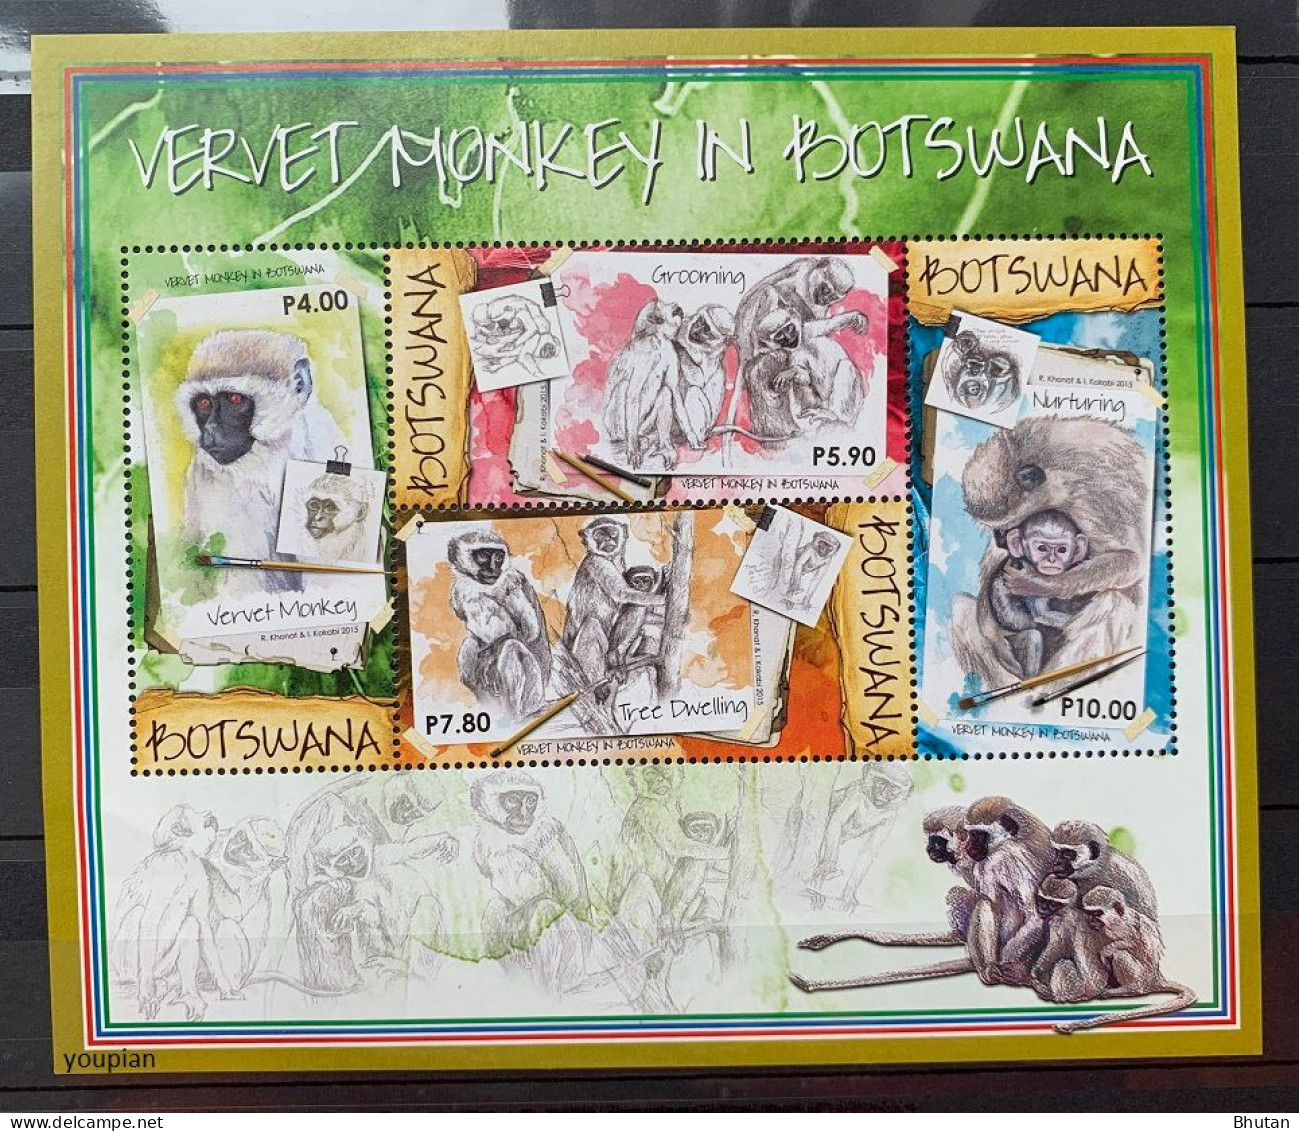 Botswana 2015, Vervet Monkey, MNH S/S - Botswana (1966-...)